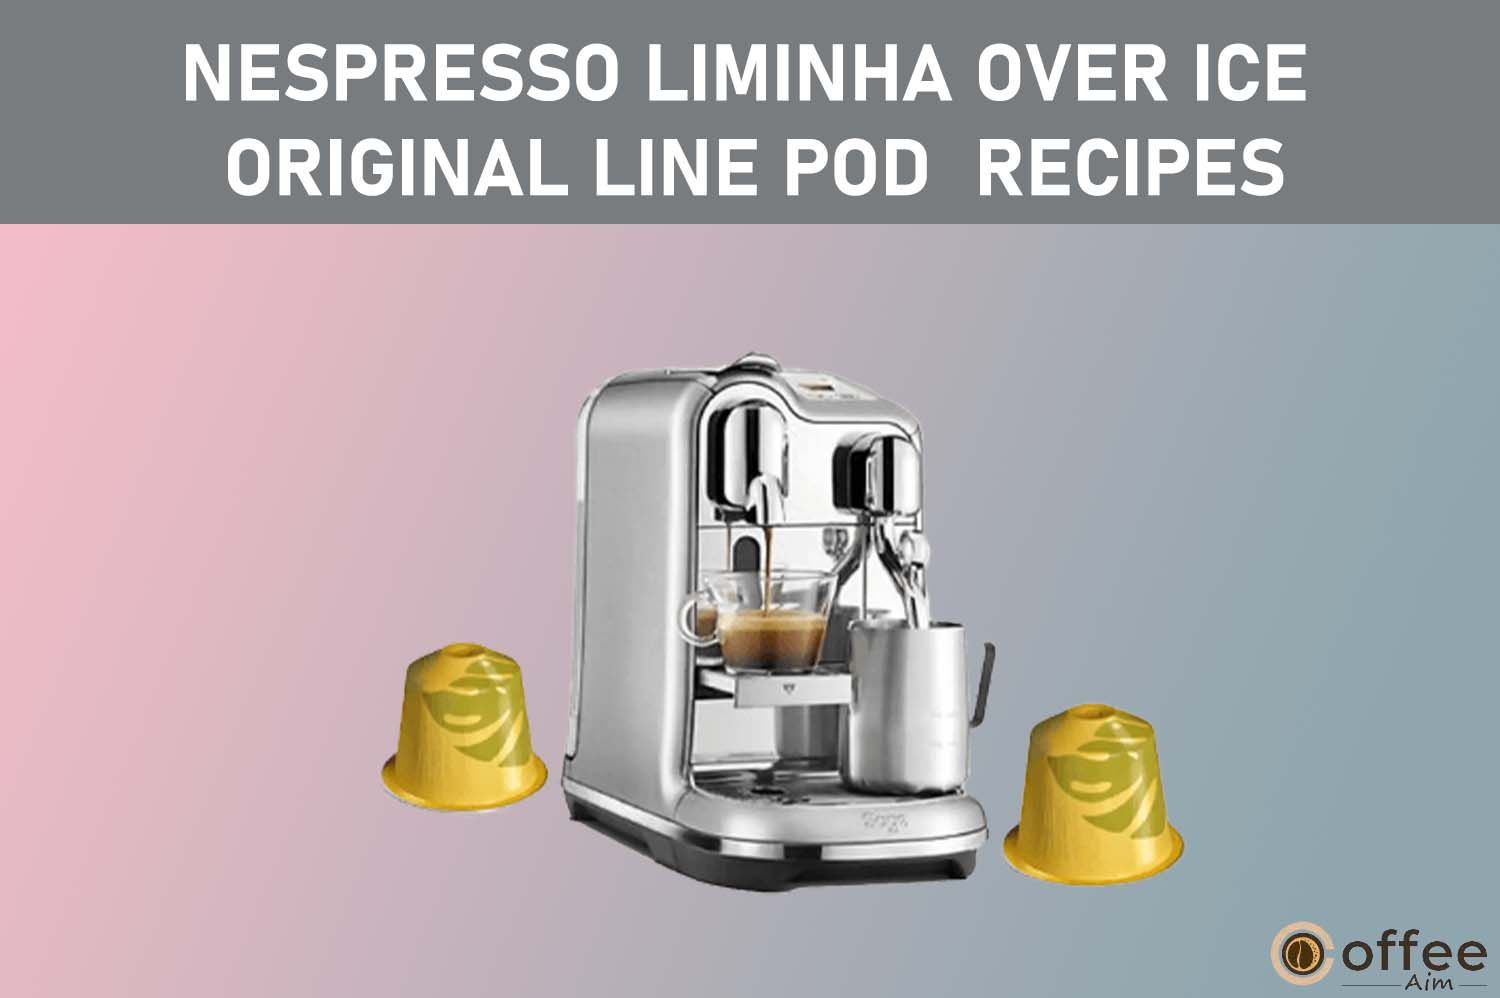 featured image for the artilce "Nespresso Liminha Over Ice Original Line Pod  Recipes"